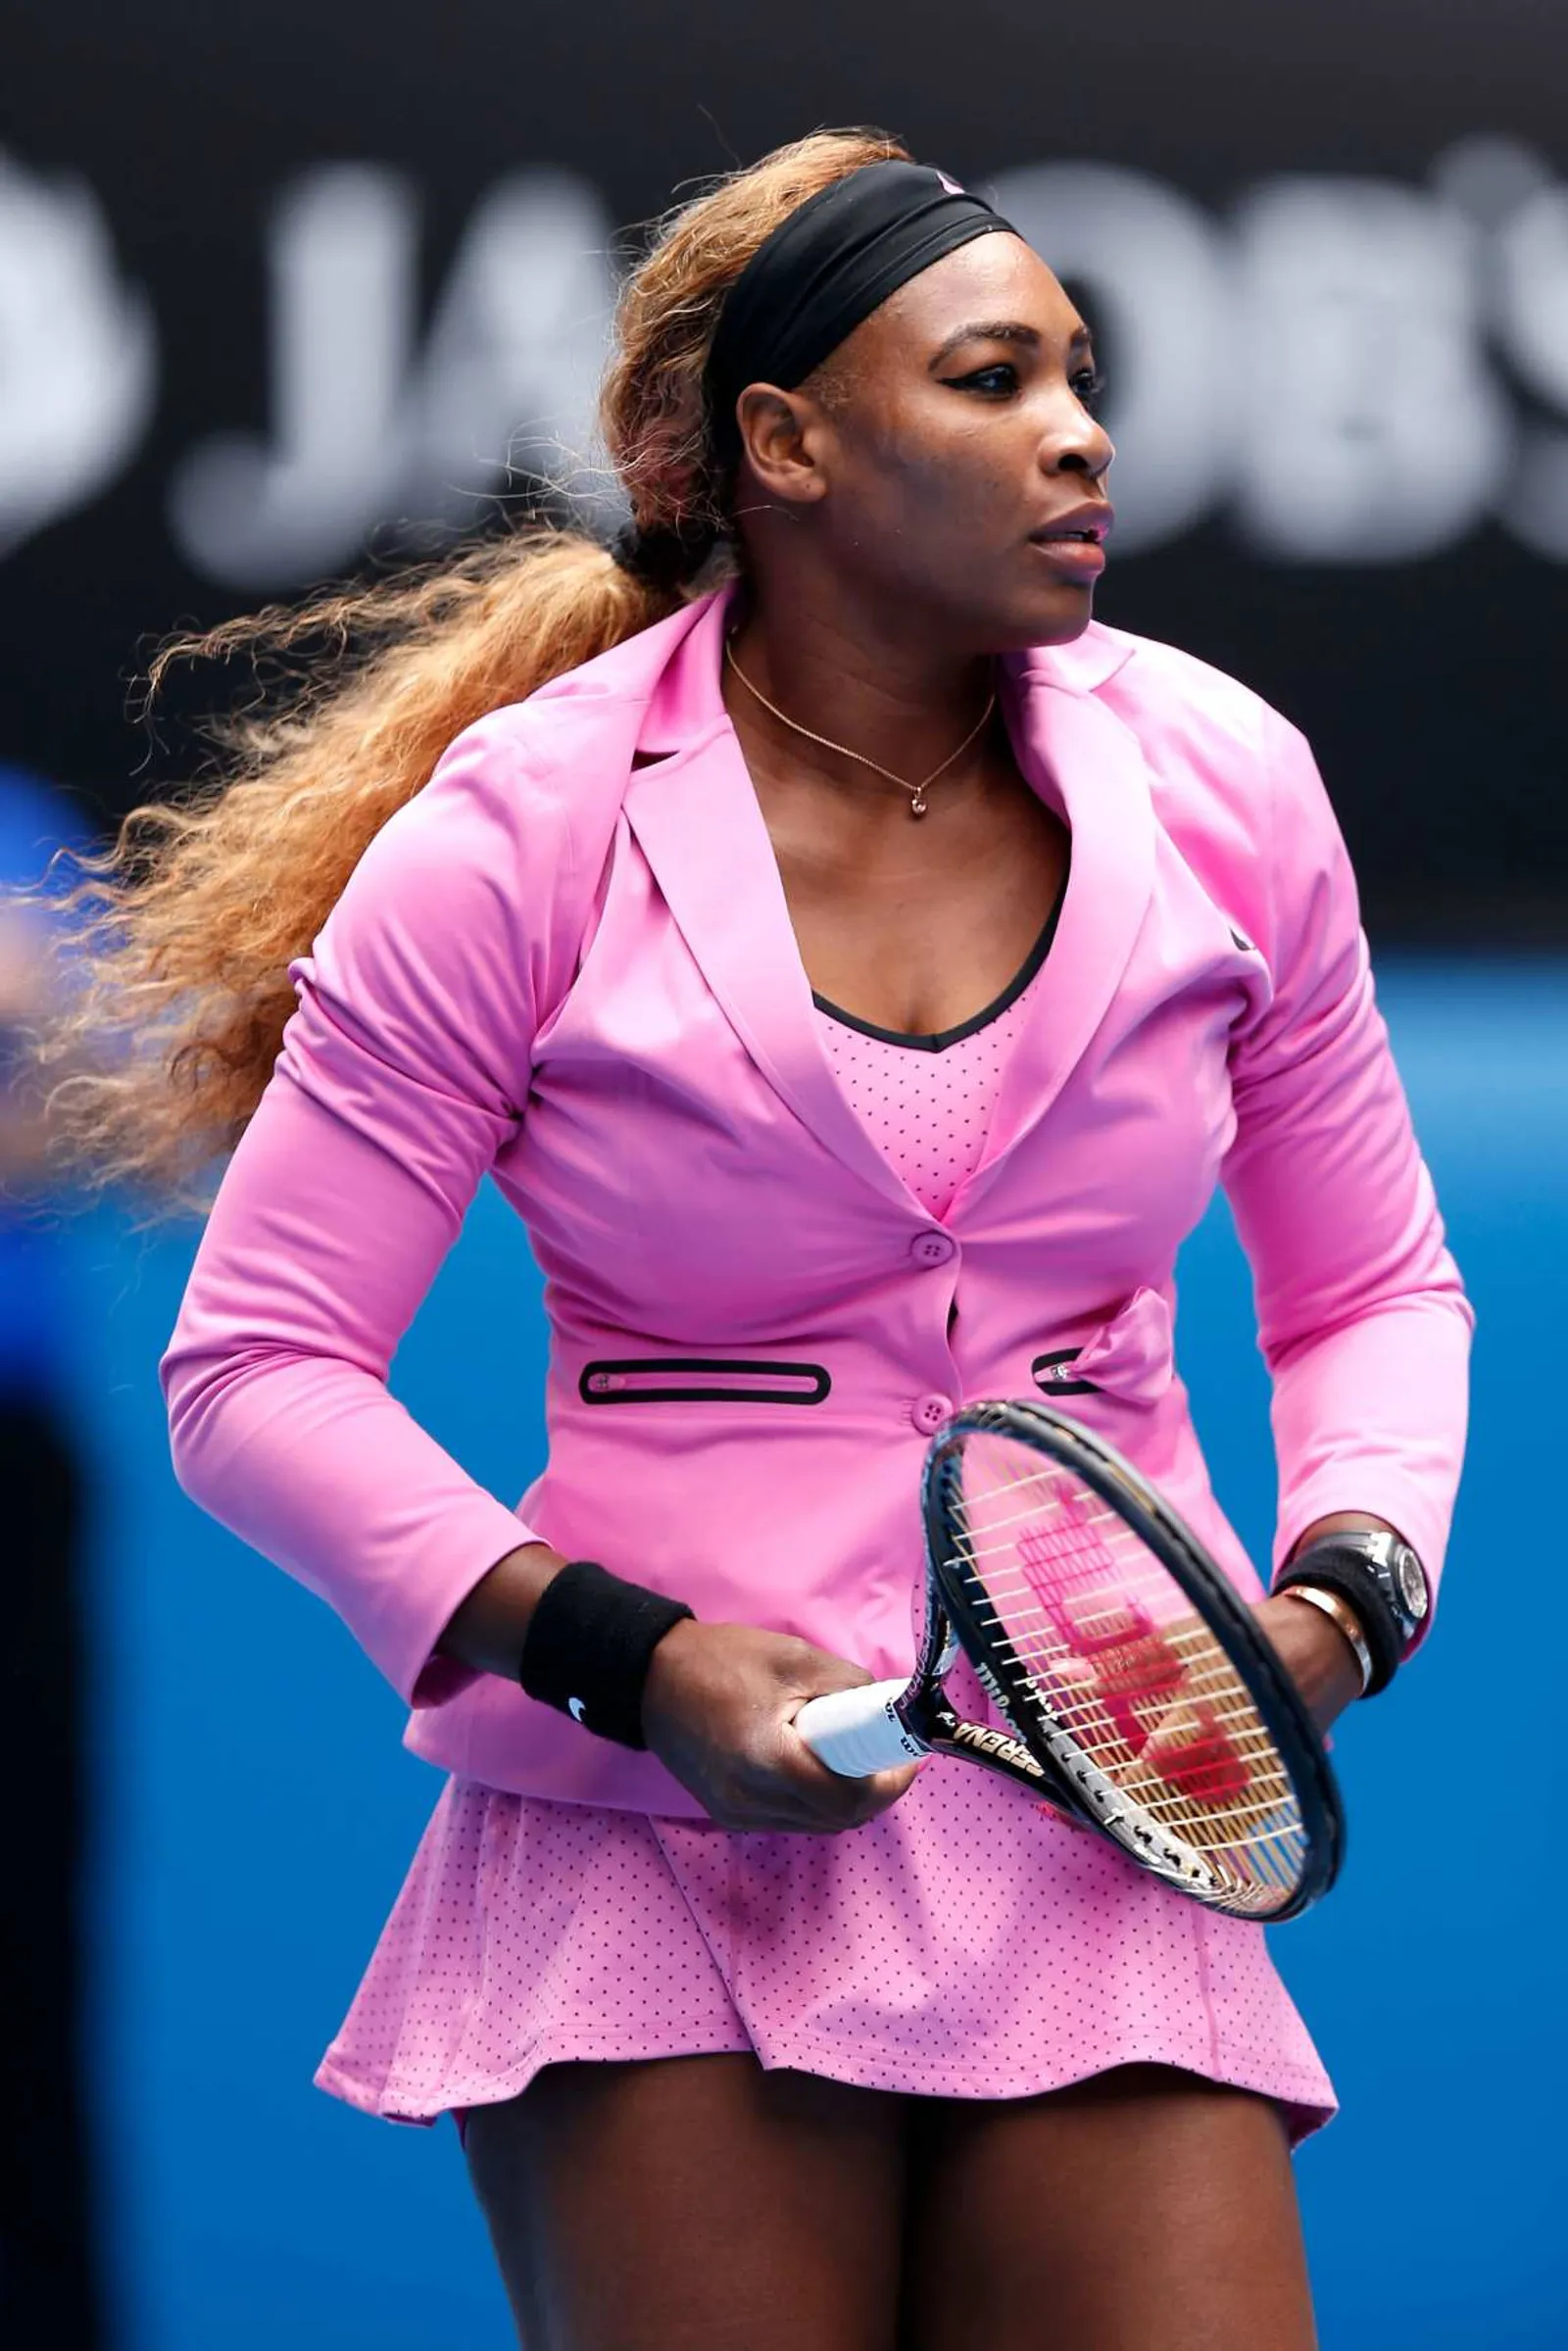 Gaya Ikonik Serena Williams di Lapangan Sebelum Pensiun